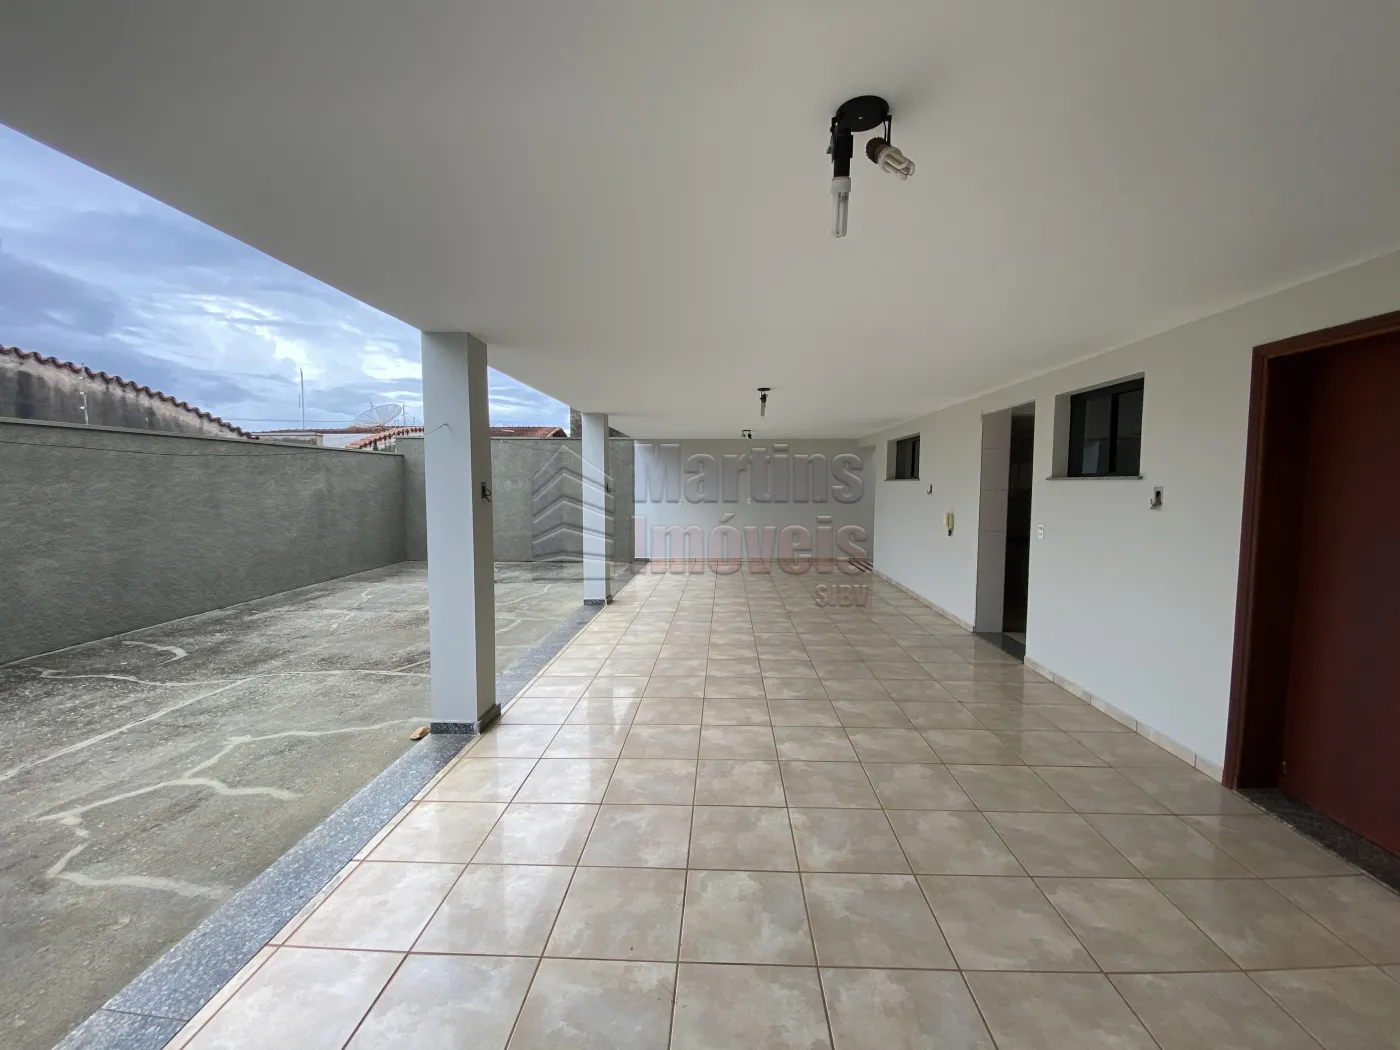 Comprar Casa / Padrão em São João da Boa Vista R$ 800.000,00 - Foto 15